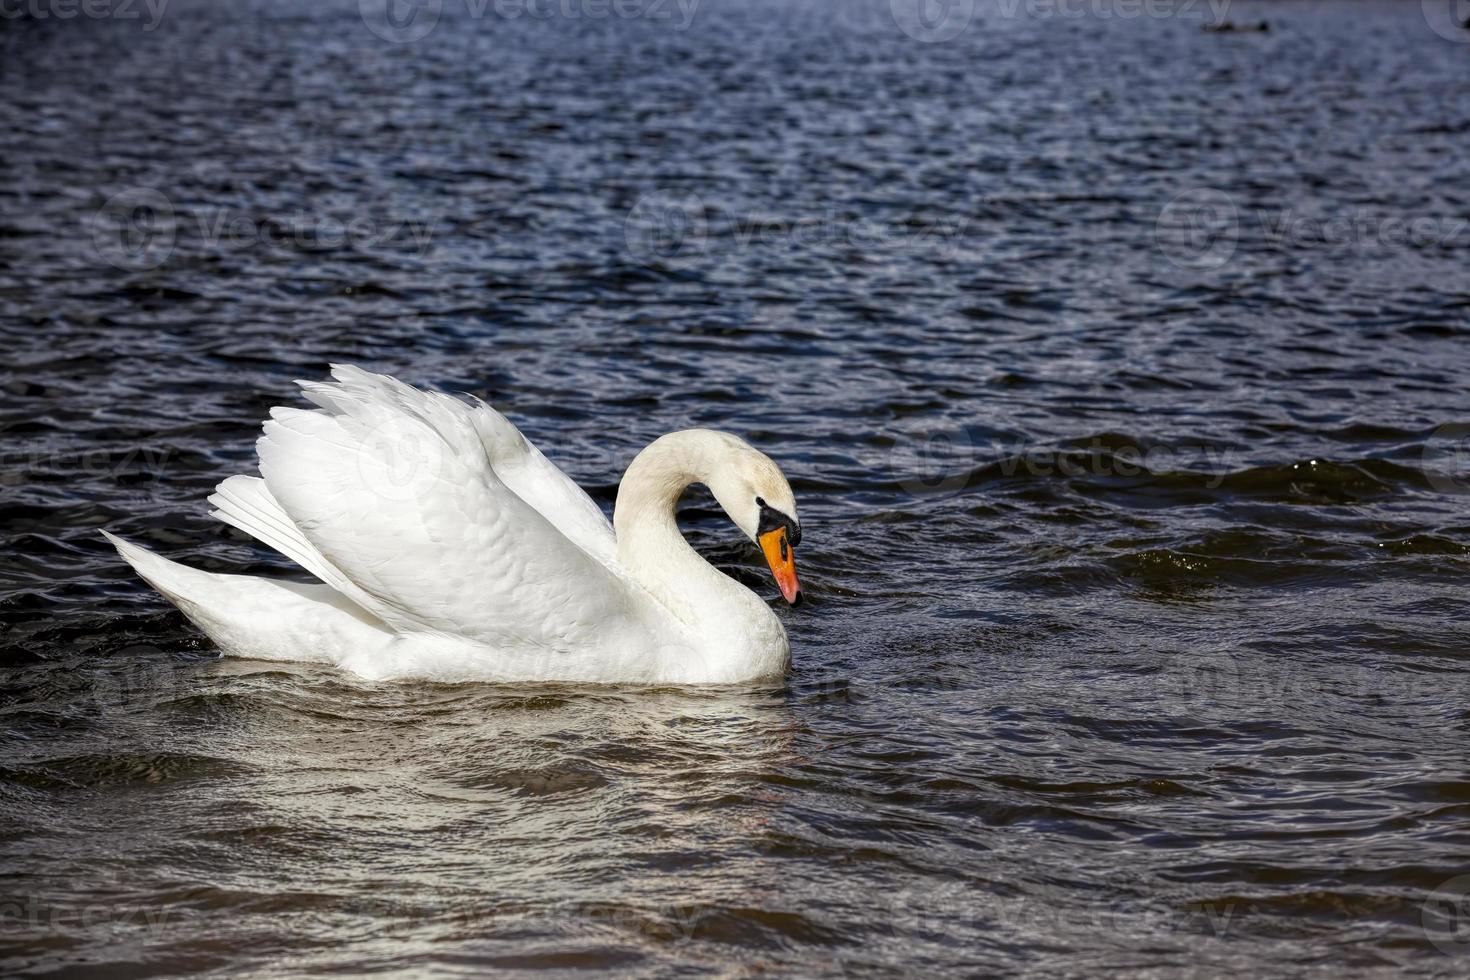 cisne solitario blanco flotando en el agua foto